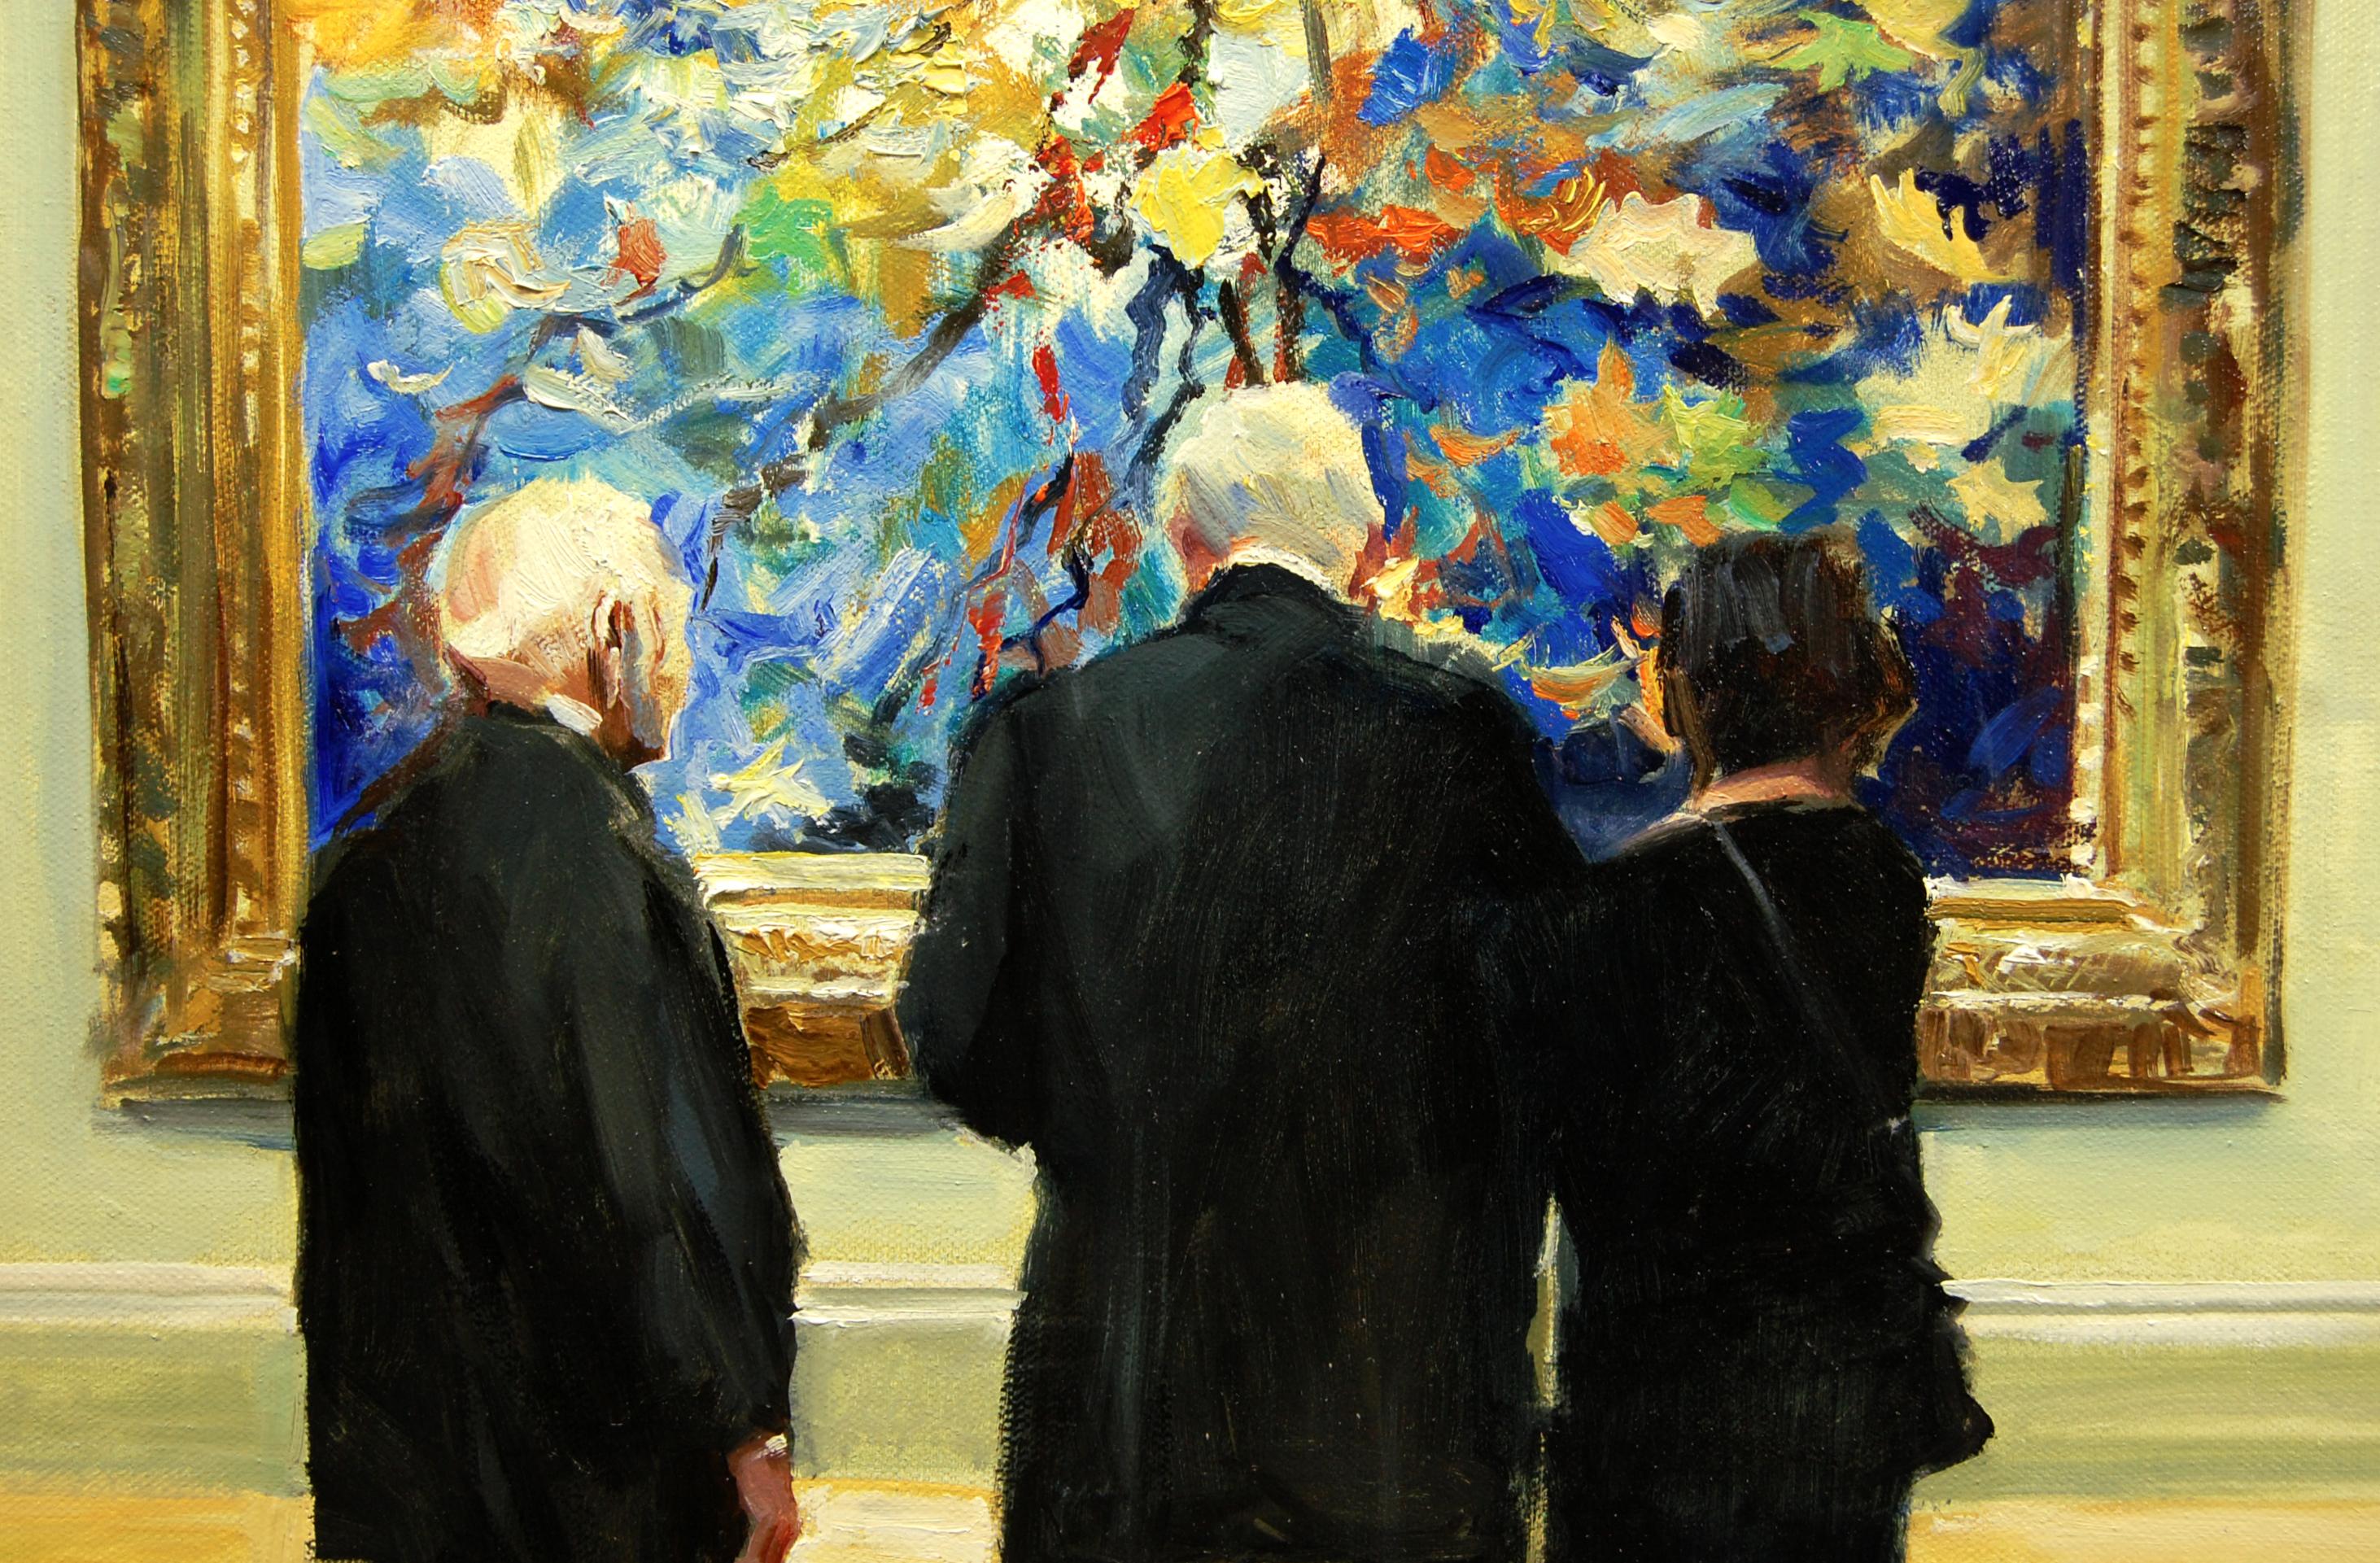 <p>Commentaires de l'artiste<br>L'artiste Onelio Marrero montre trois personnes observant un grand tableau orné dans un musée. La scène, essentiellement fictive, illustre son expérience professionnelle, qui consiste à observer, dans l'expectative,